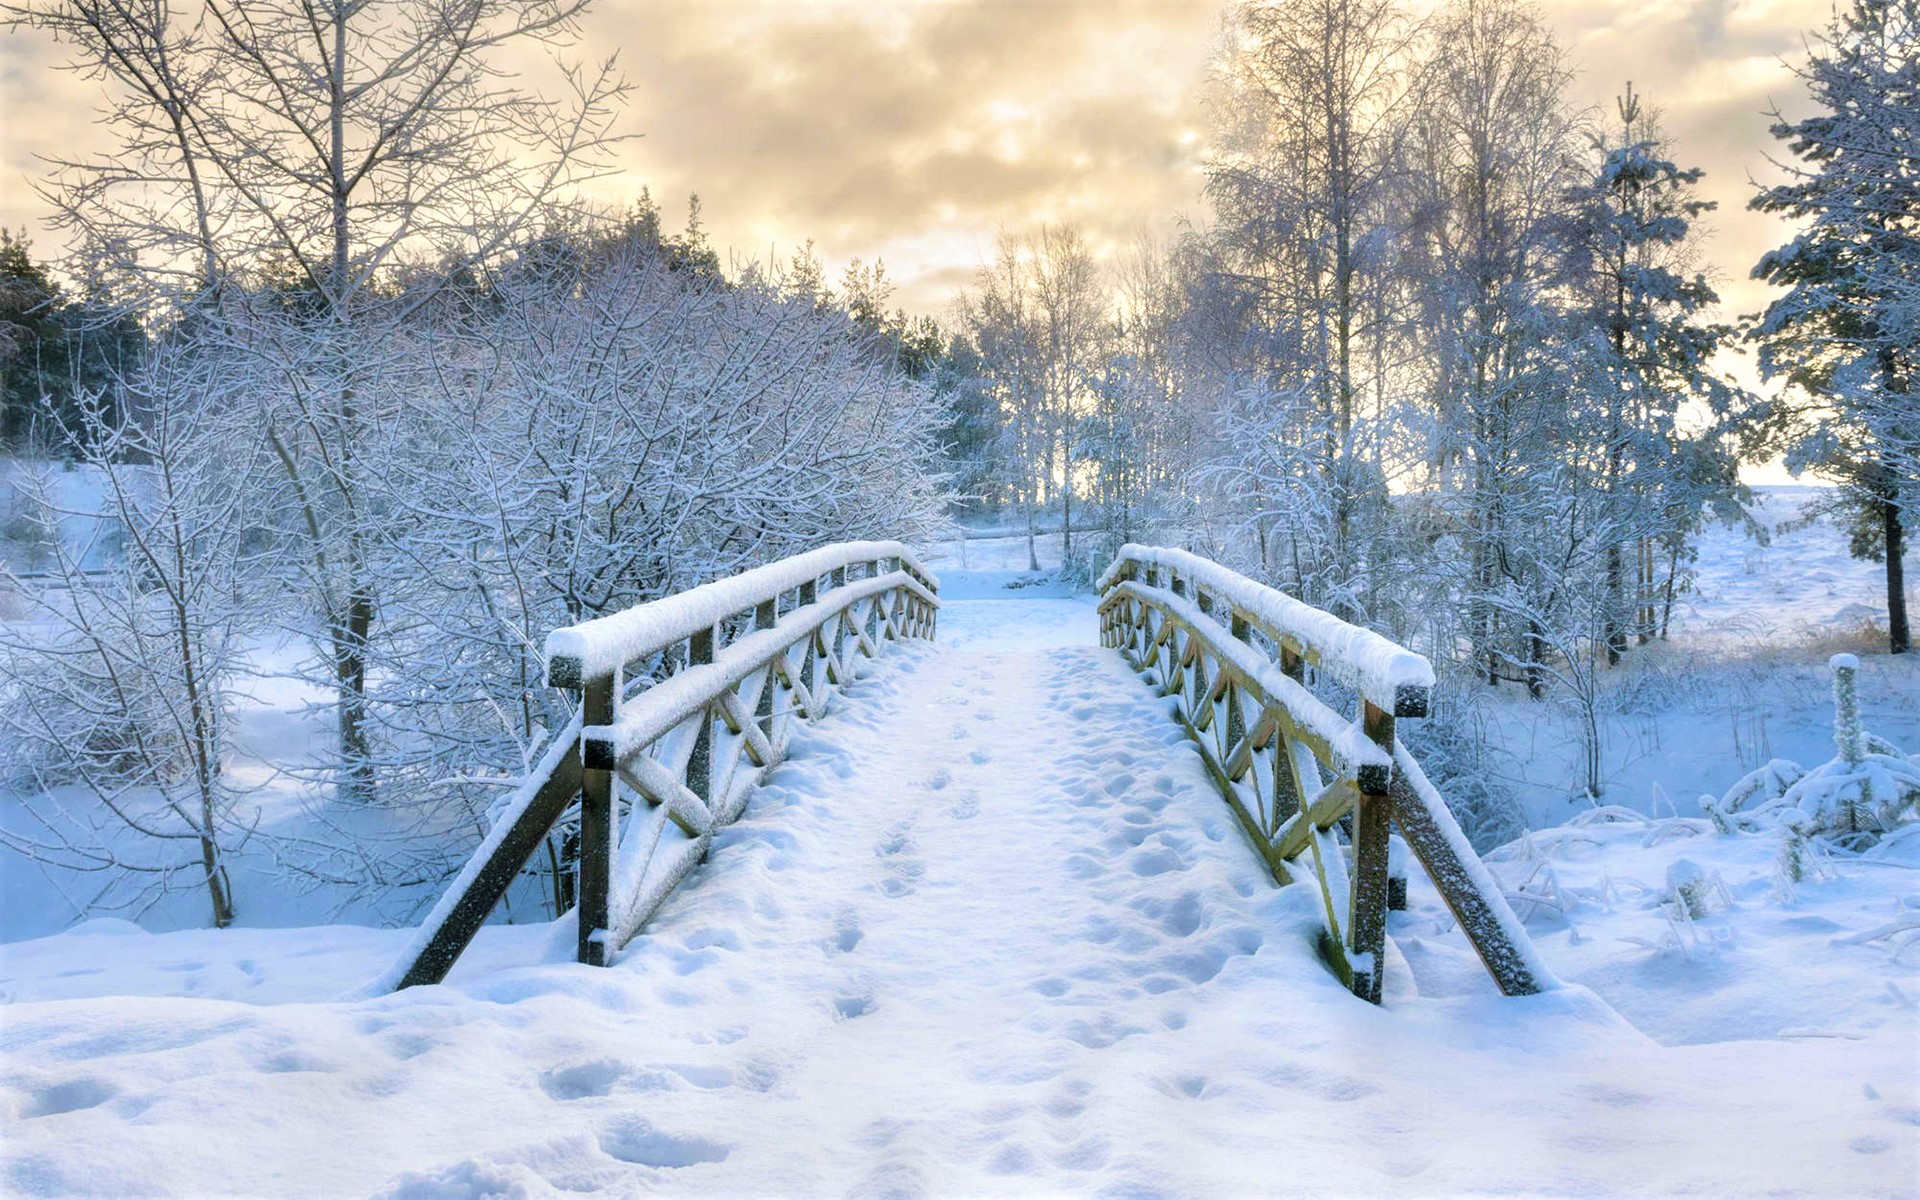 Скачать картинку Зима, Снег, Парк, Мост, Фотографии в телефон бесплатно.